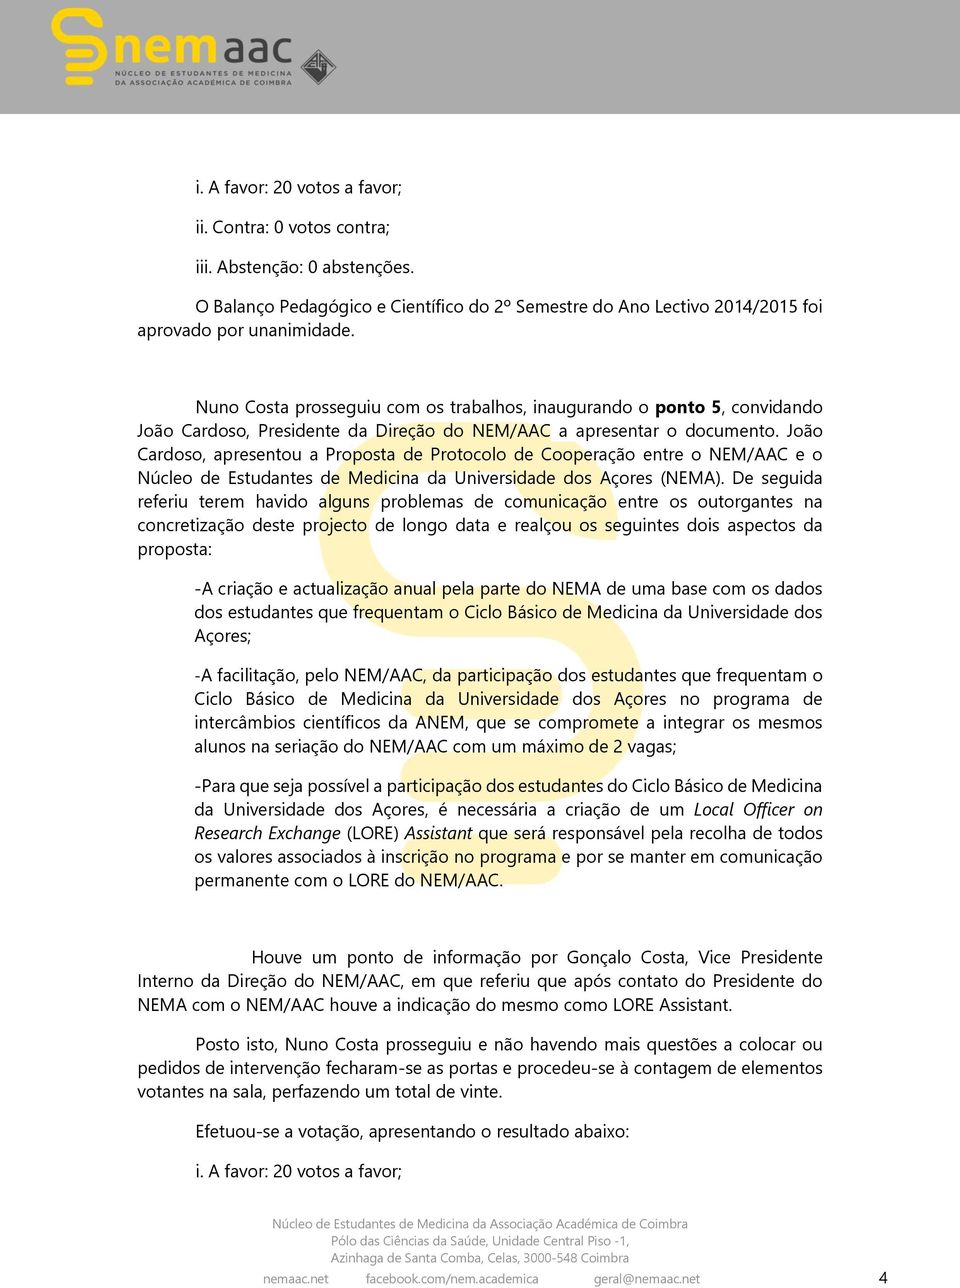 João Cardoso, apresentou a Proposta de Protocolo de Cooperação entre o NEM/AAC e o Núcleo de Estudantes de Medicina da Universidade dos Açores (NEMA).